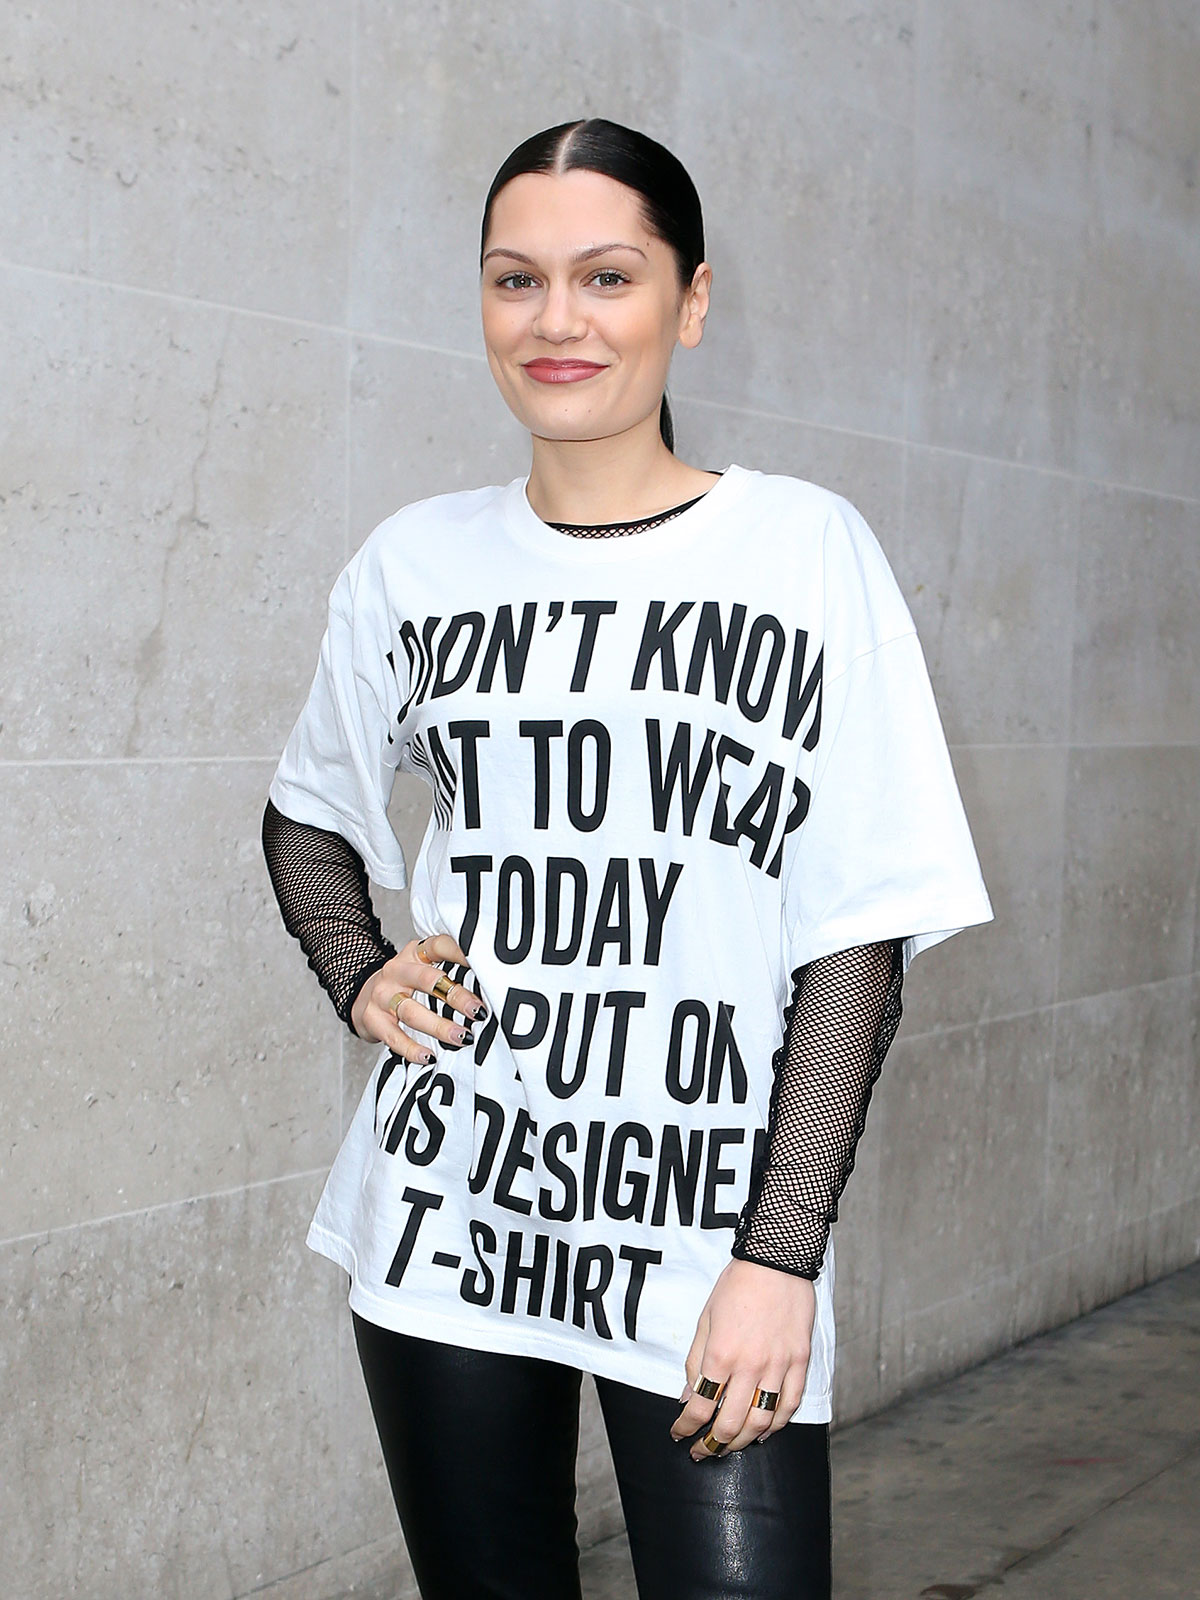 Jessie J leaving BBC Radio 1 Studios in London